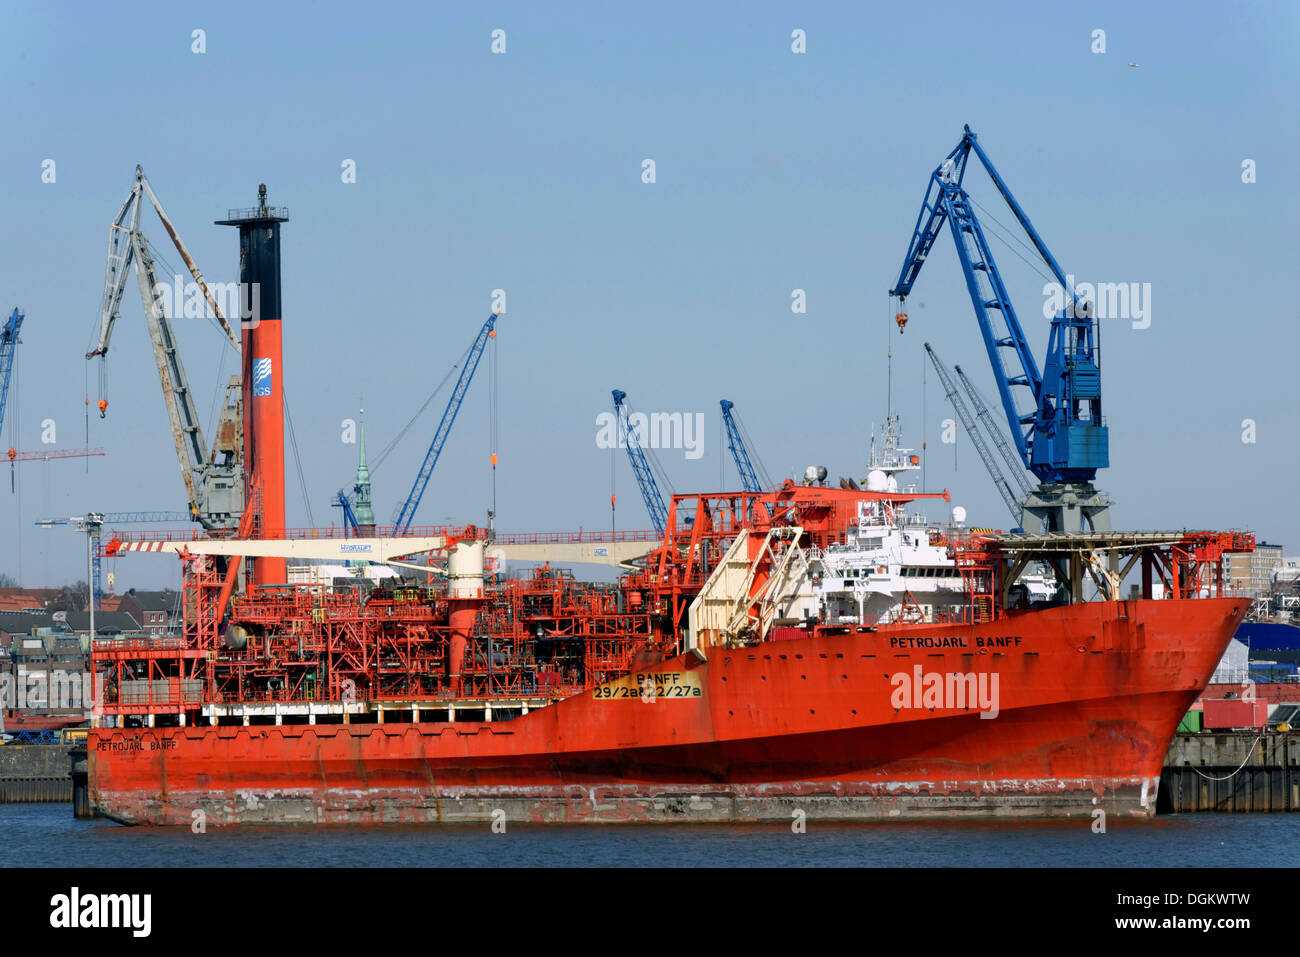 Spezialschiff, Petrojarl Banff auf Werften Blohm und Voss, Hamburg, Hamburg, Hamburg, Deutschland Stockfoto